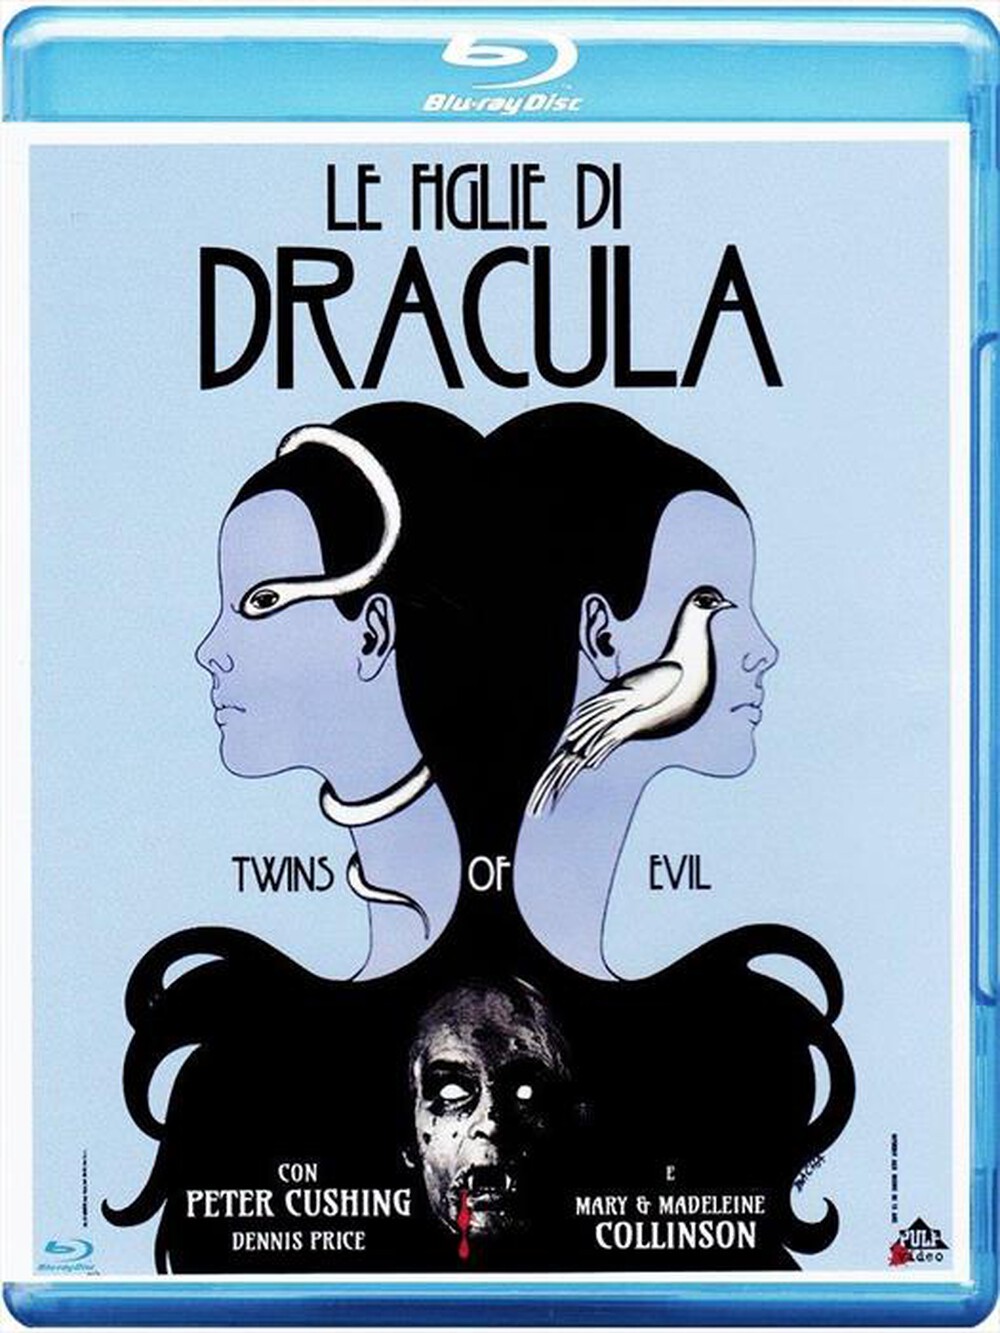 "CECCHI GORI - Figlie Di Dracula (Le) - "